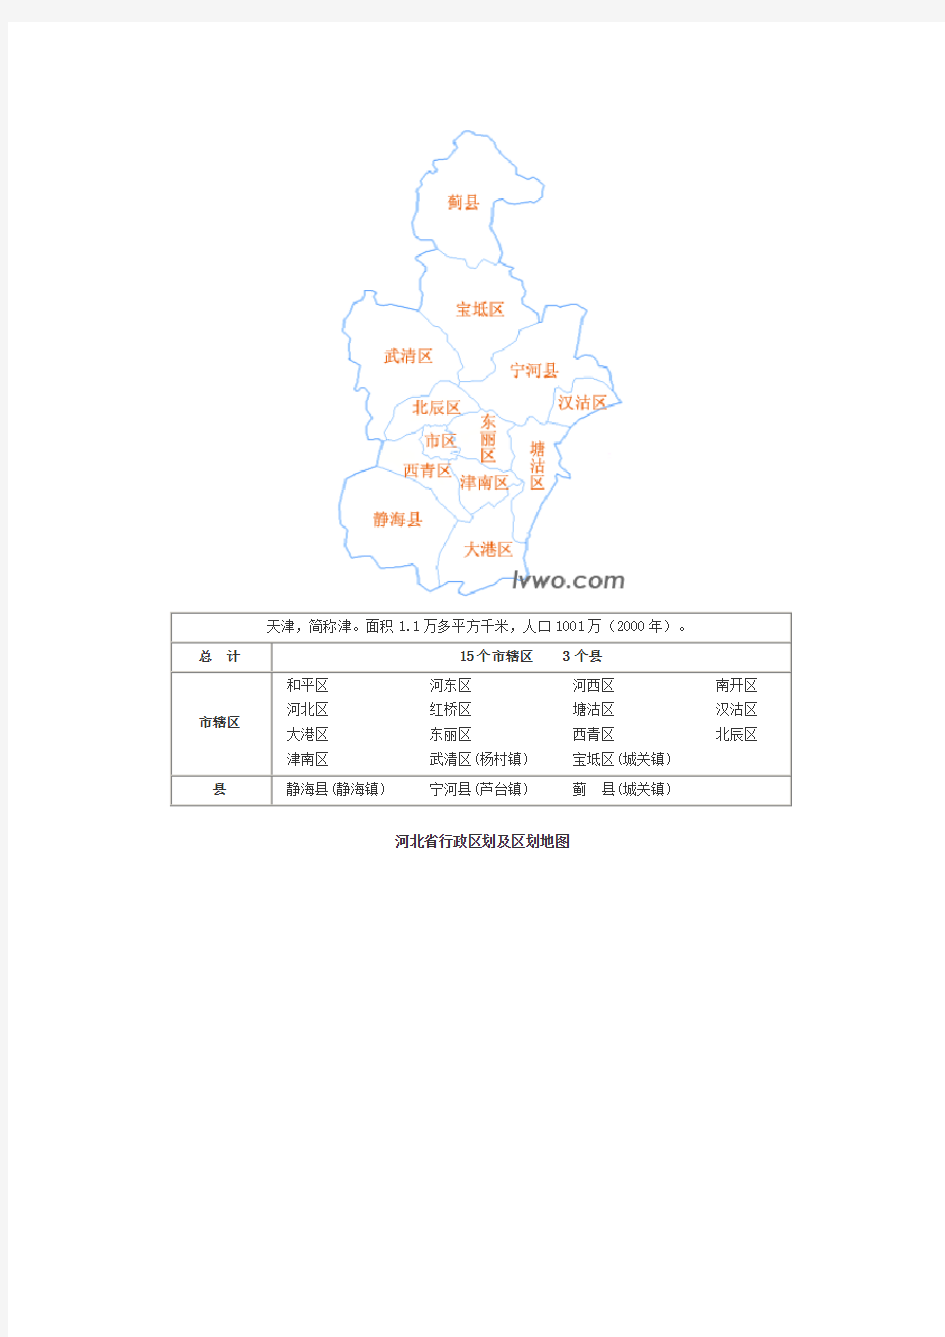 中国分省行政区划及区划地图(图形版)